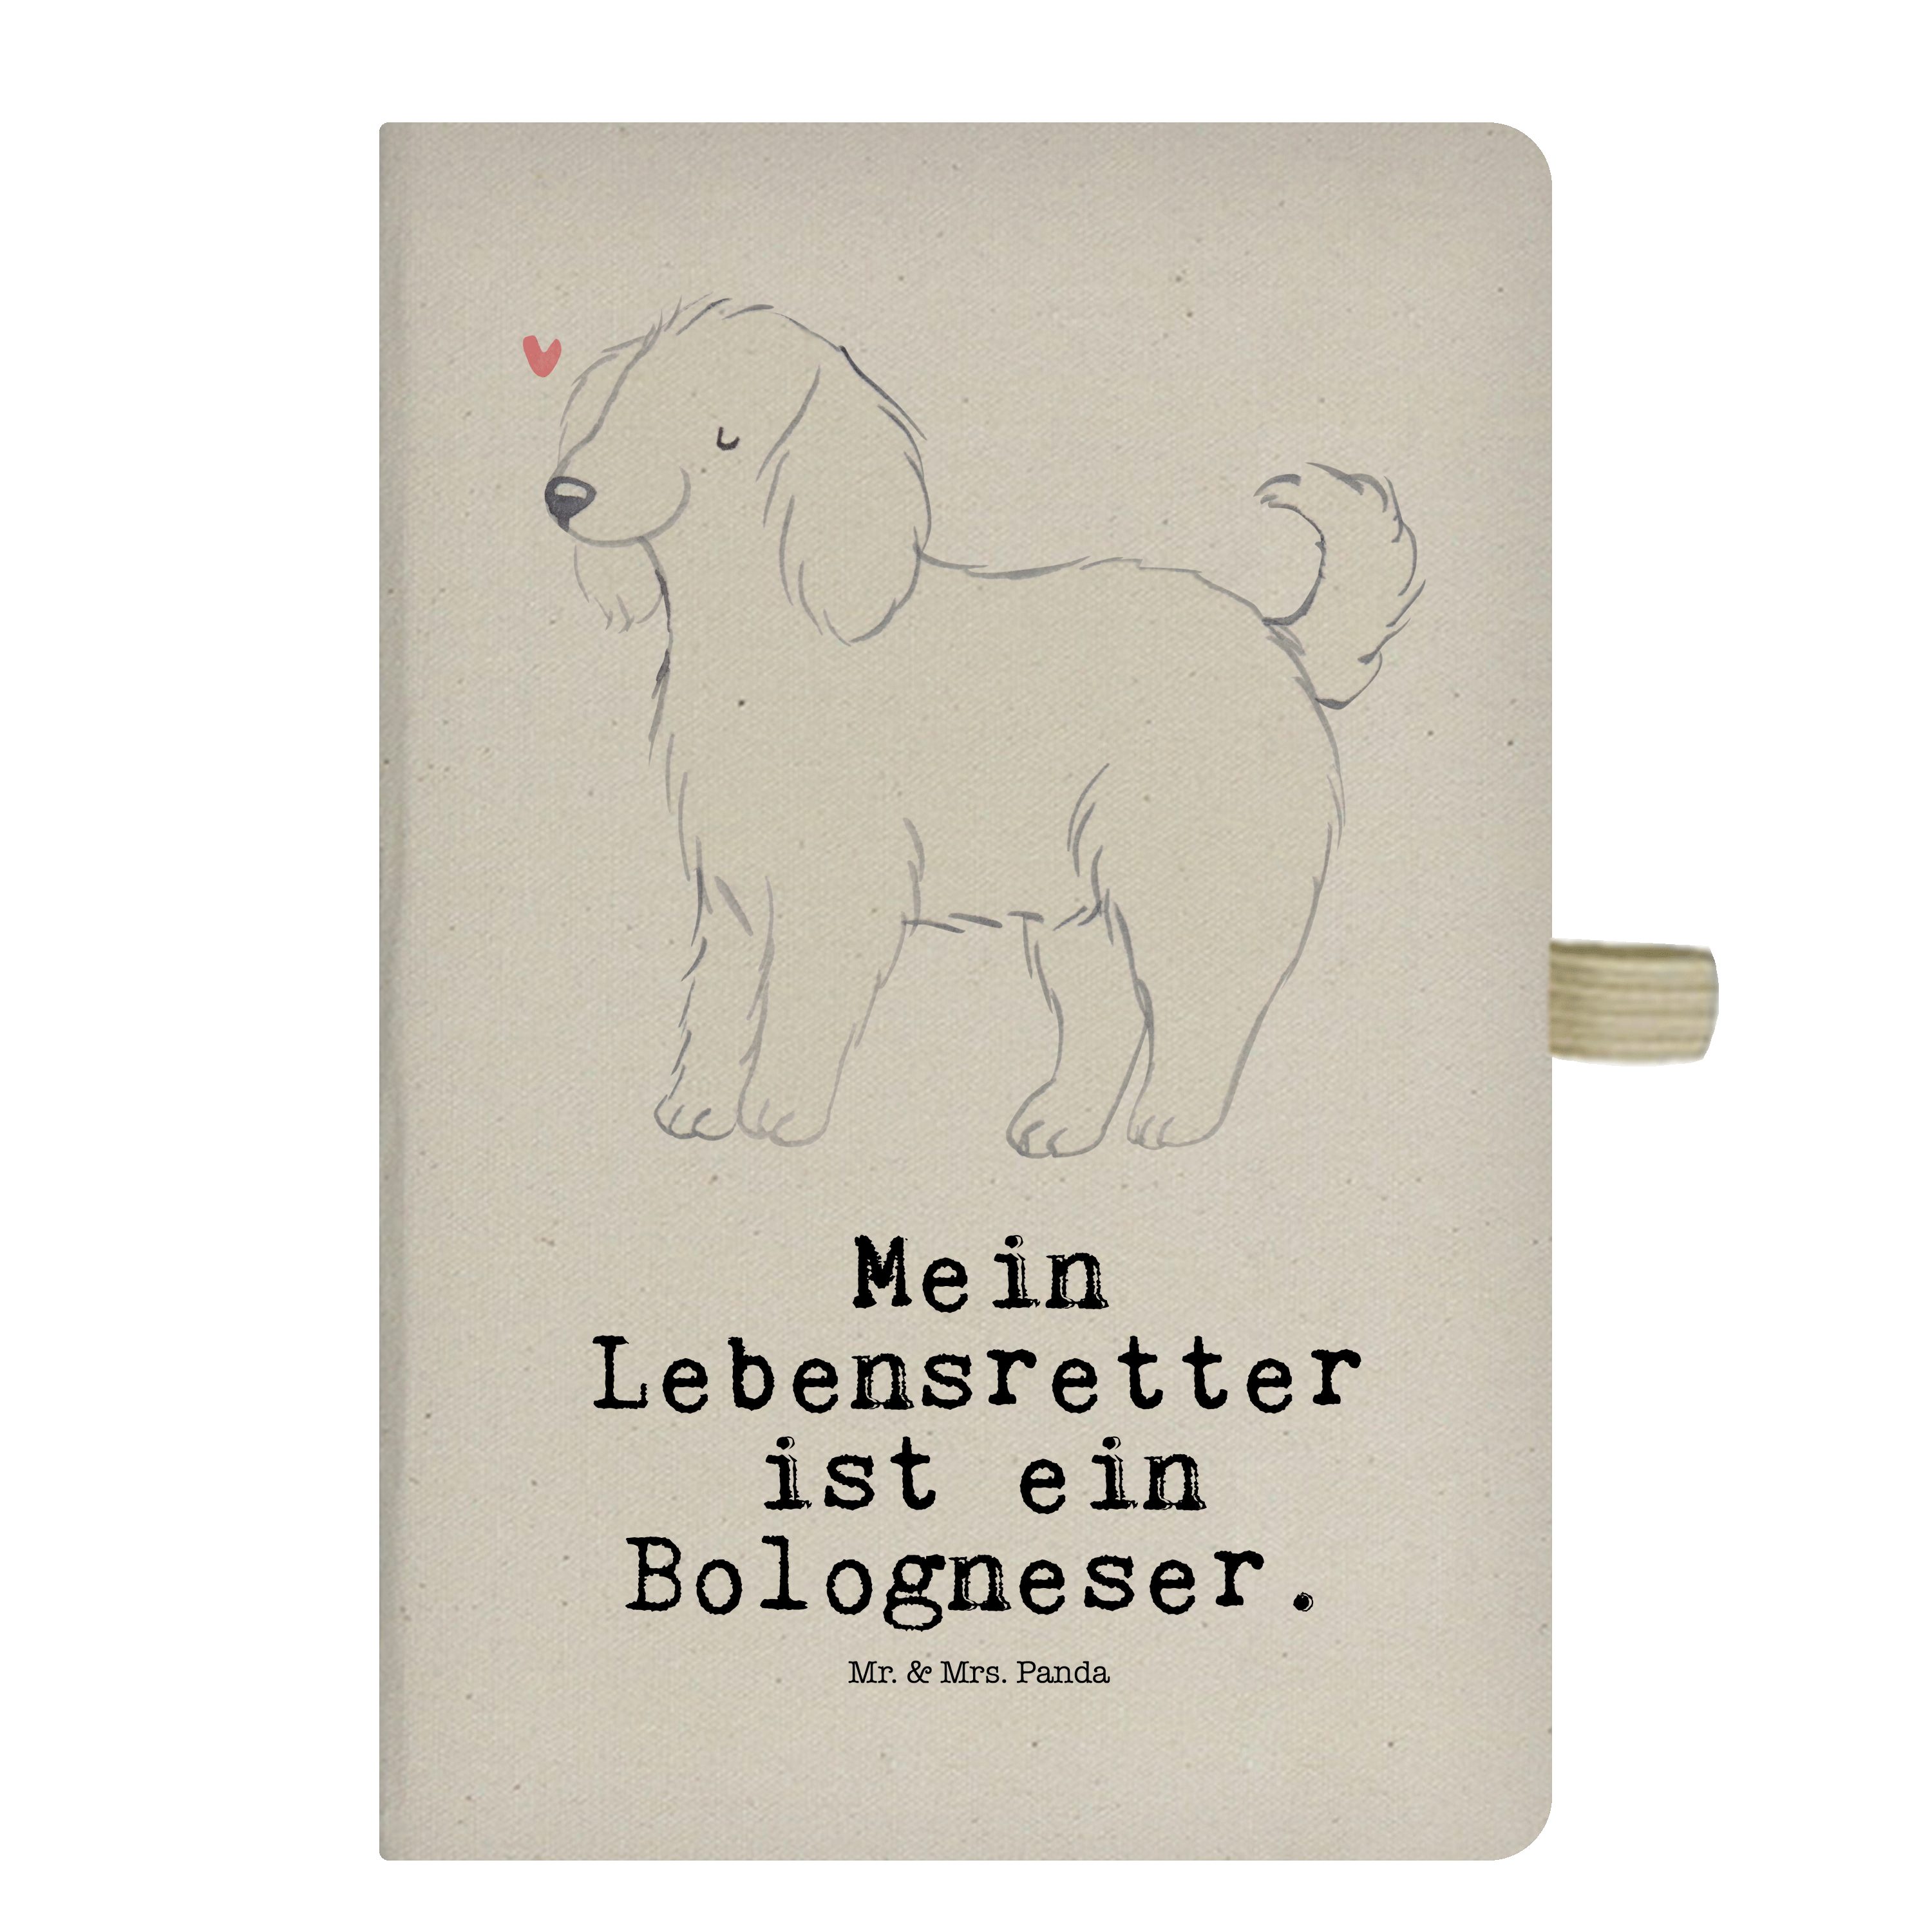 Mr. & Mrs. Panda Notizbuch Bologneser Lebensretter - Transparent - Geschenk, Notizen, Hundebesit Mr. & Mrs. Panda